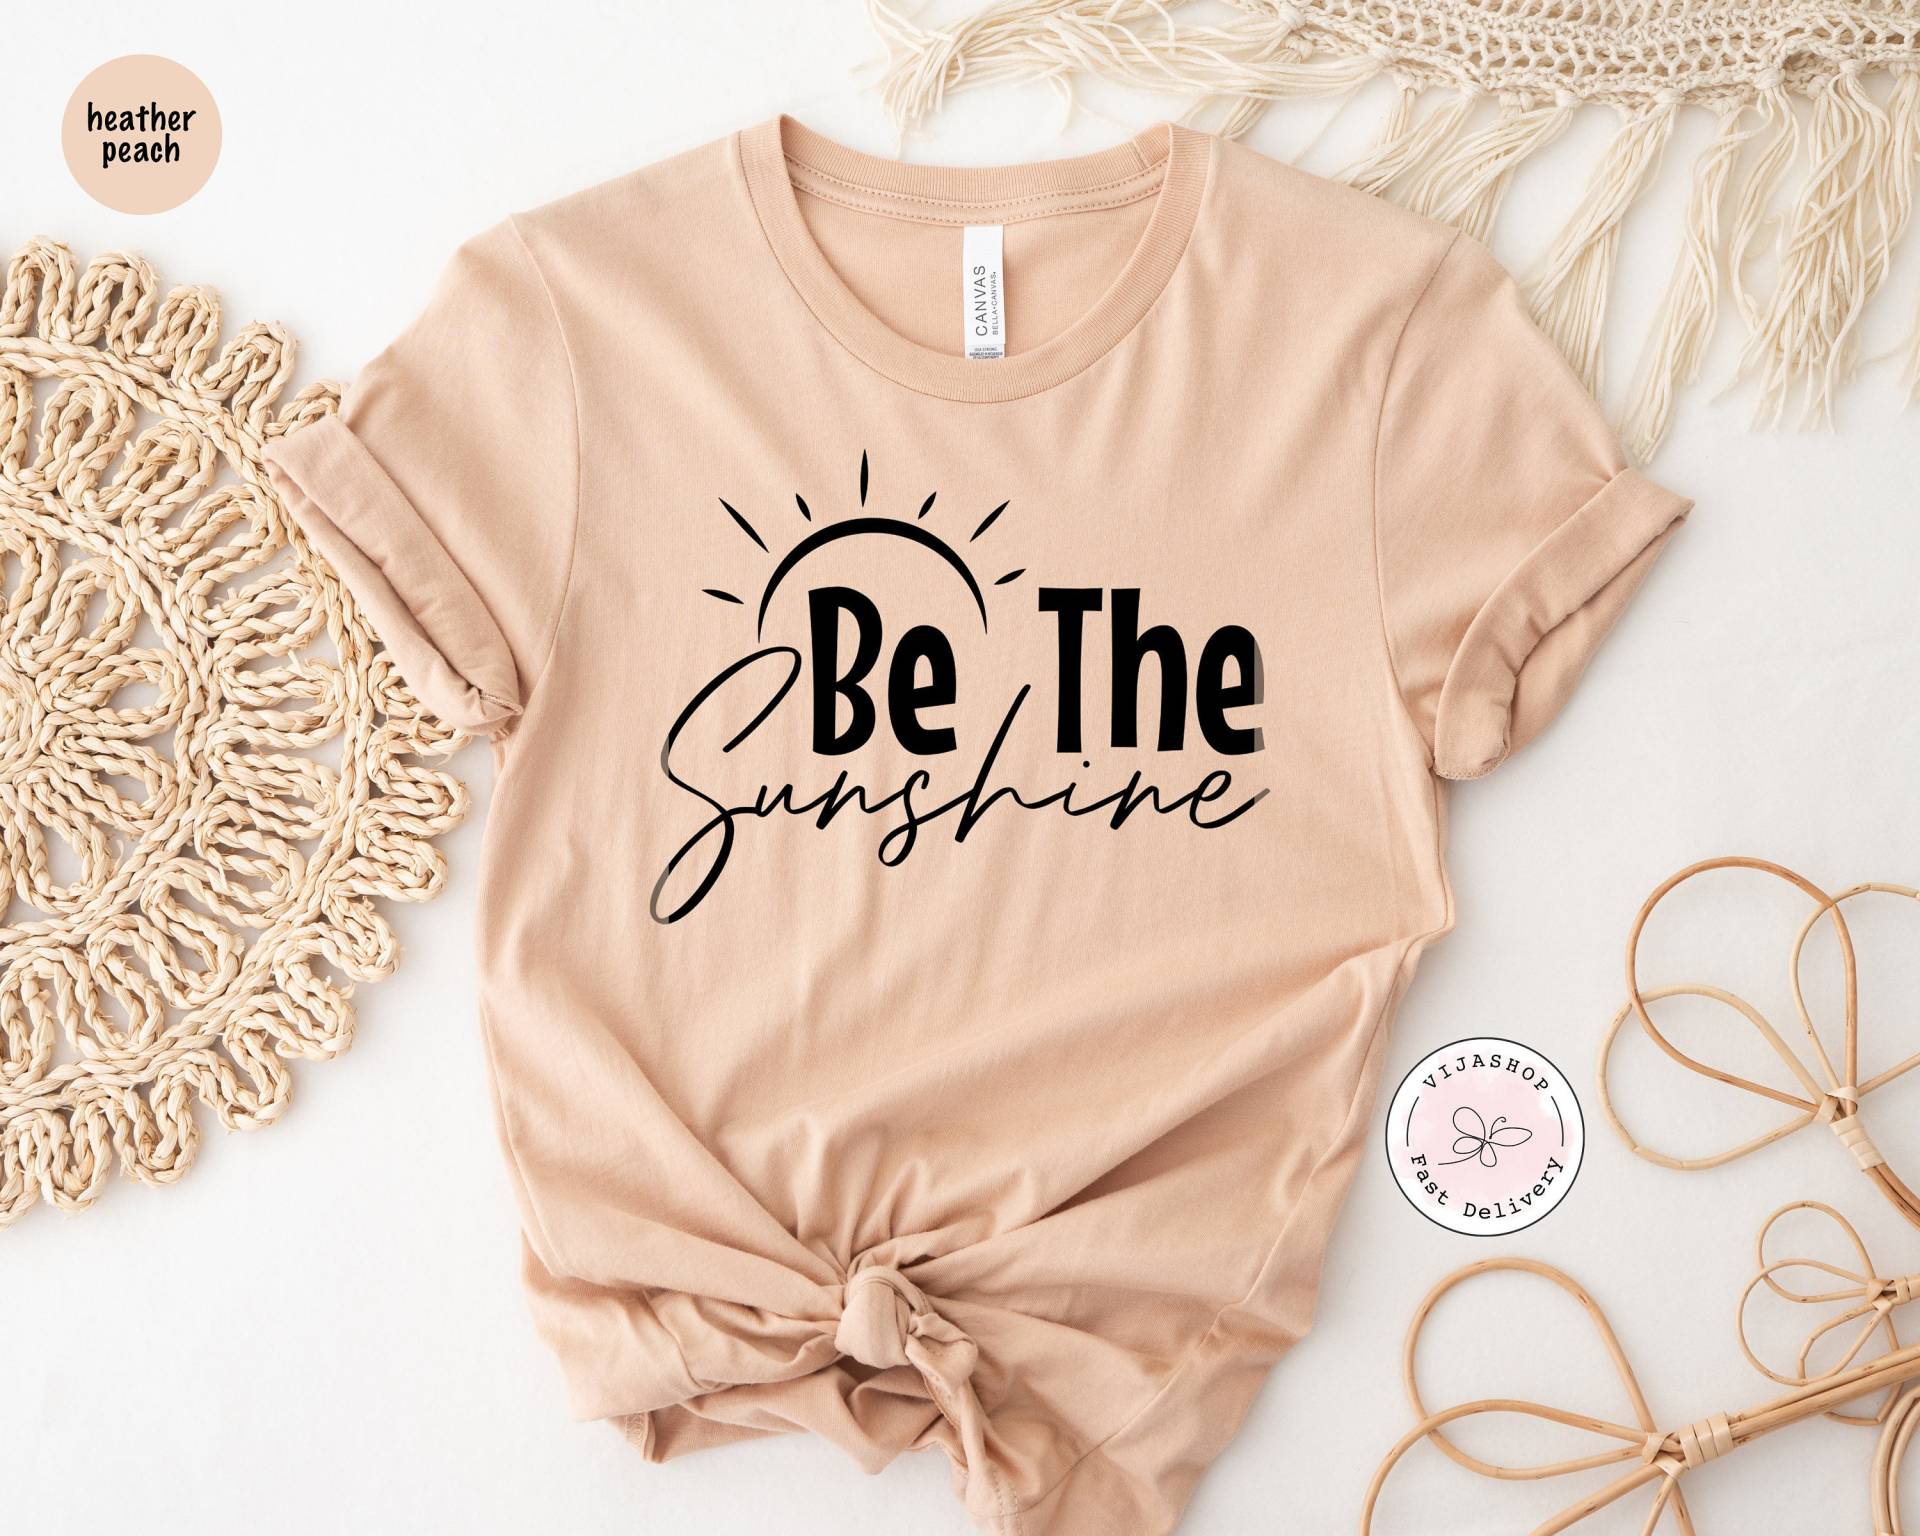 Seien Sie Der Sonnenschein Shirt, Sommer-Shirt Für Frauen, Boho-Shirts, Strand-Shirts, Vintage-Grafik-T-Shirt, Freundlichkeit Tshirt von VijaShop